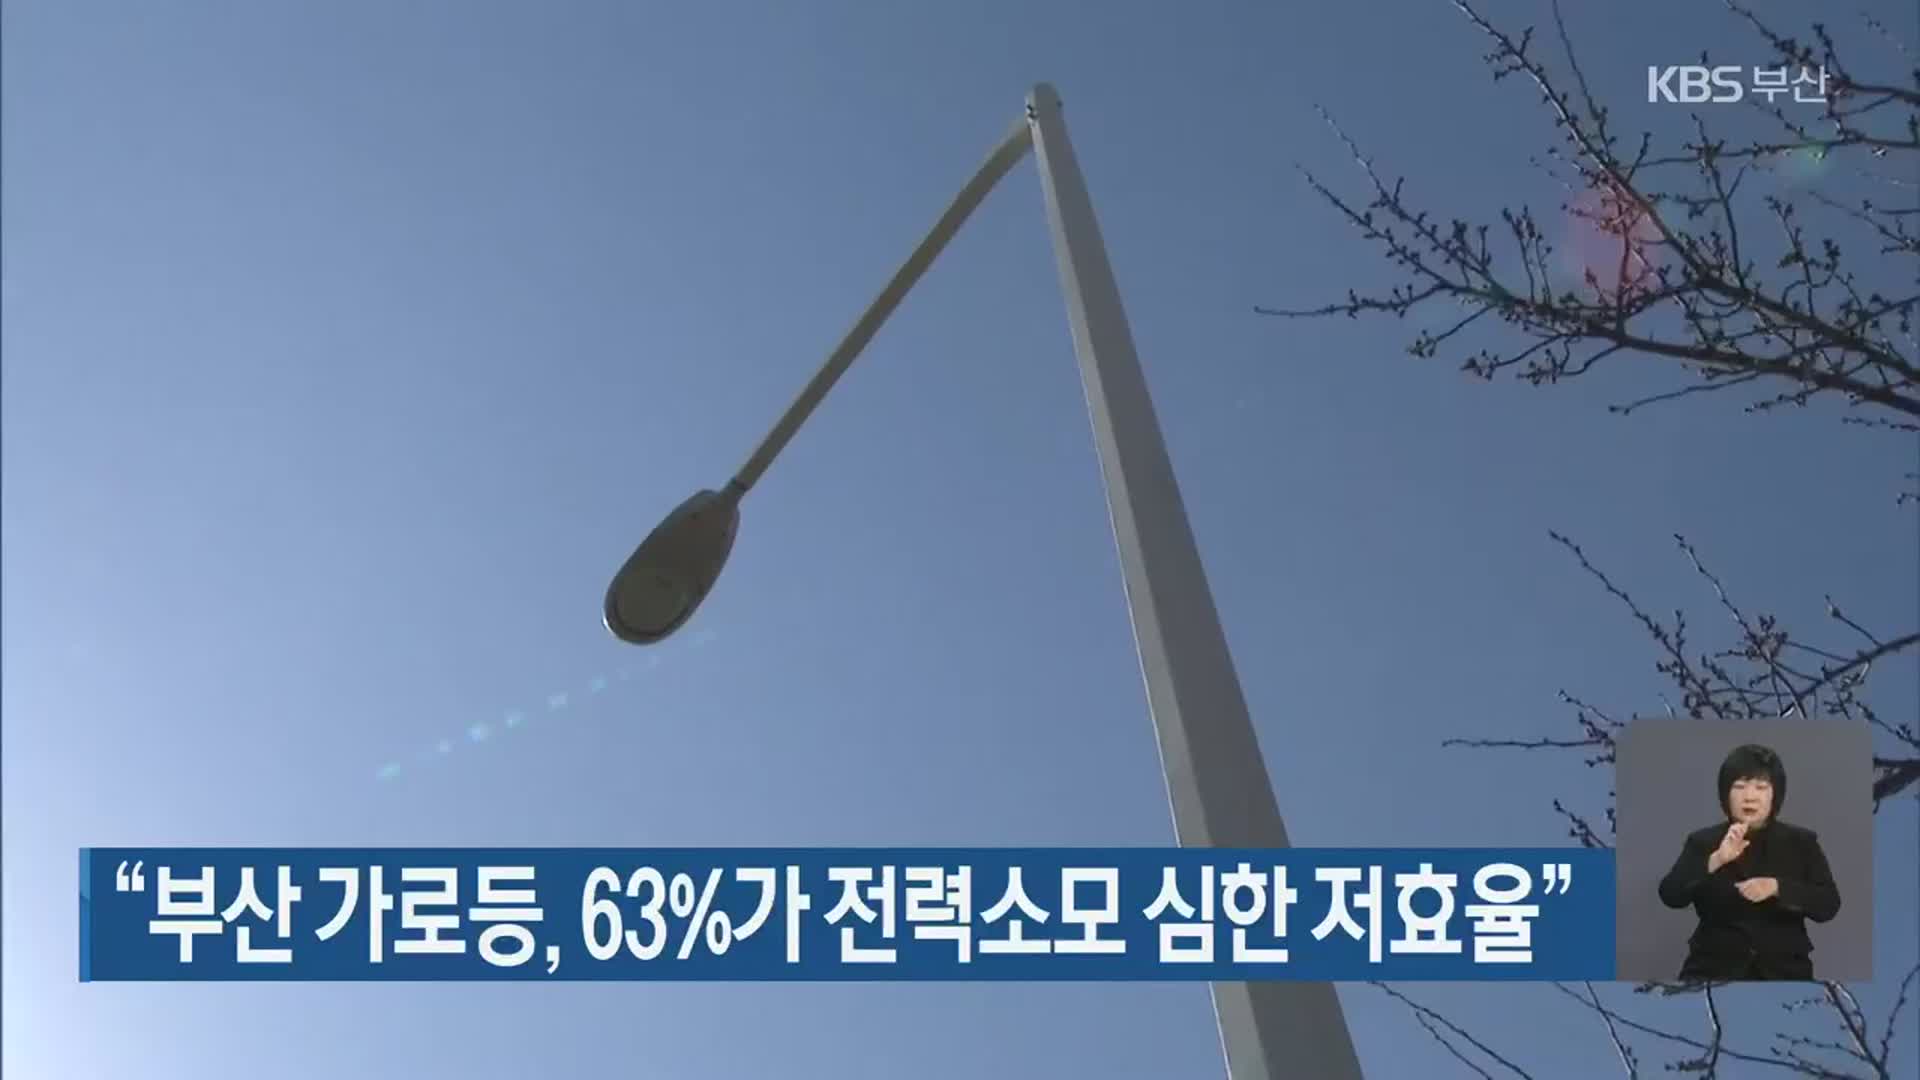 “부산 가로등, 63%가 전력소모 심한 저효율”